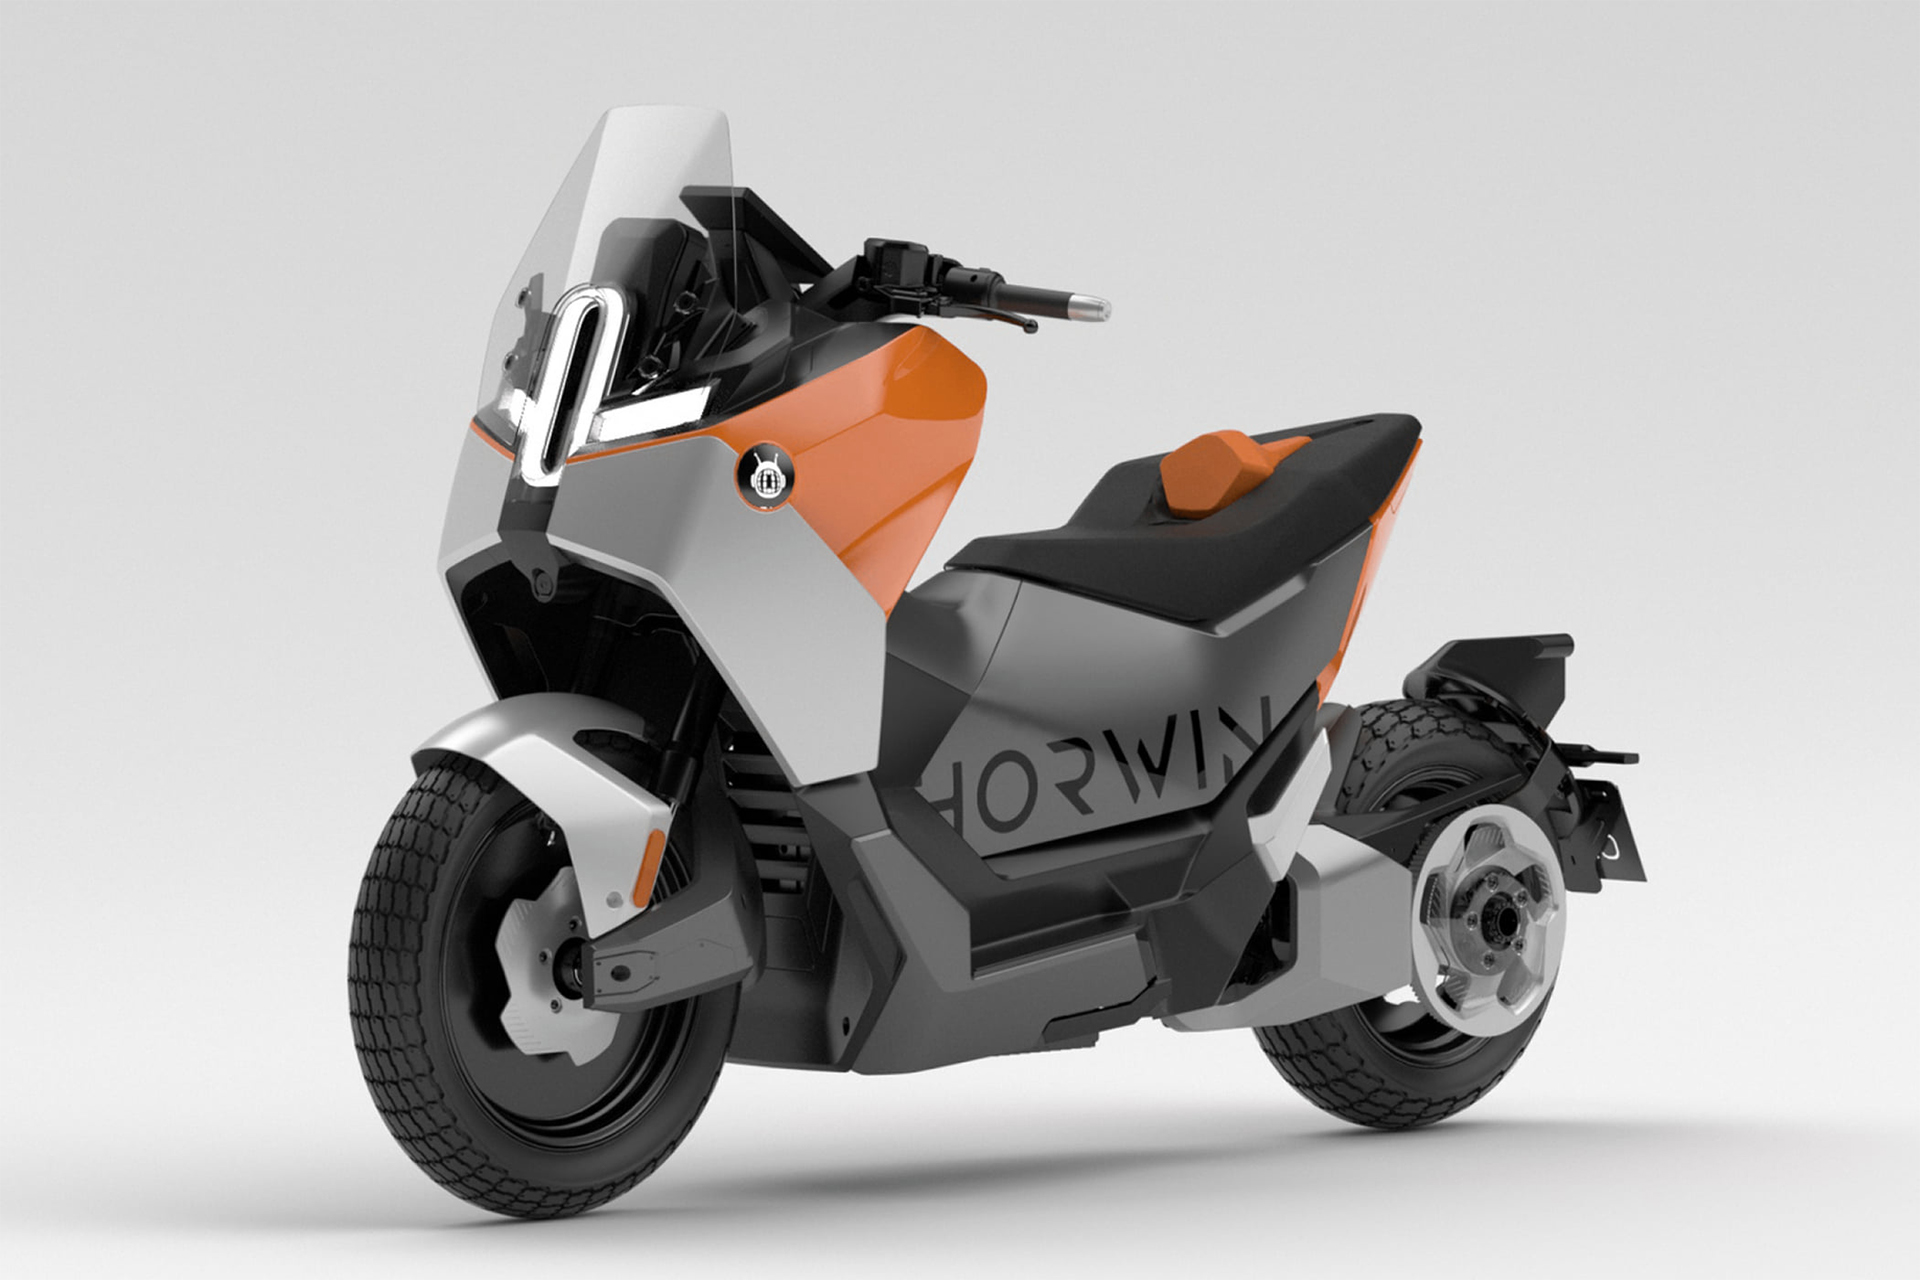 Scooter elétrica super potente da Horwin pode atingir 200 km h com autonomia de até 300 km e vem equipada com 30 sensores de alta tecnologia para identificar problemas